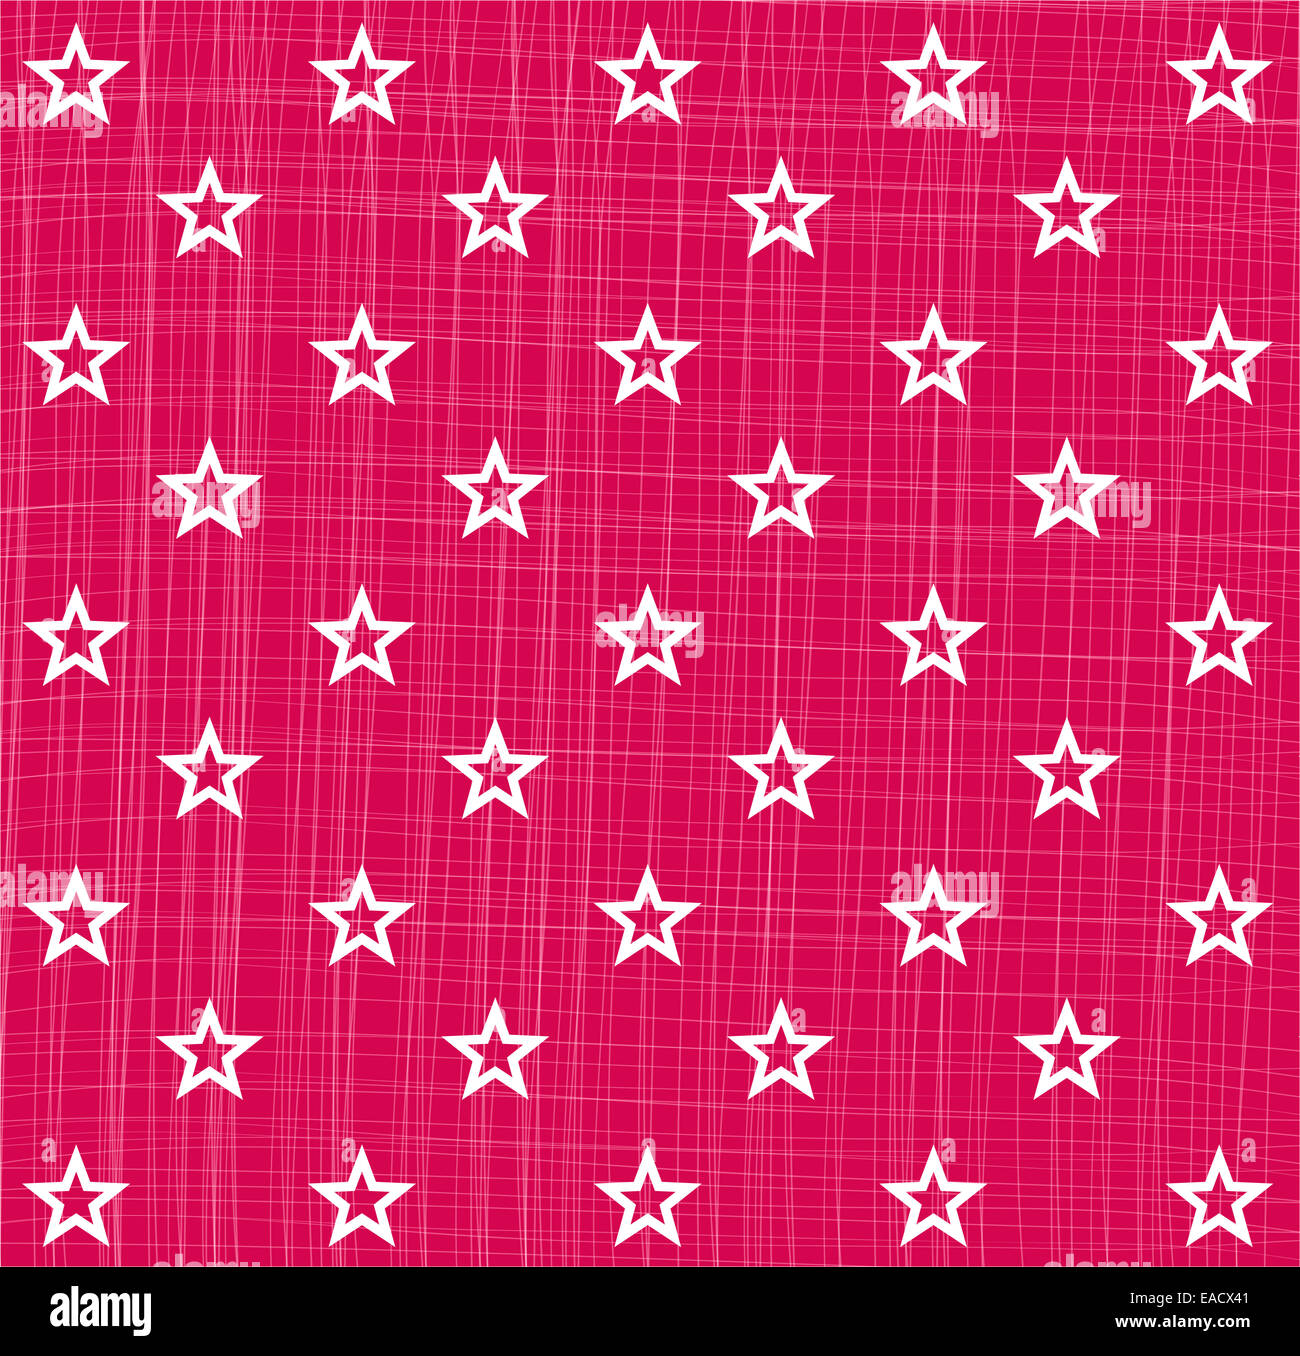 Stern Sterne Sternmuster Muster patrón rosa Sternenmuster Kontur Struktur Hintergrund Weihnachten Navidad Heilig Abend Grafik Foto de stock